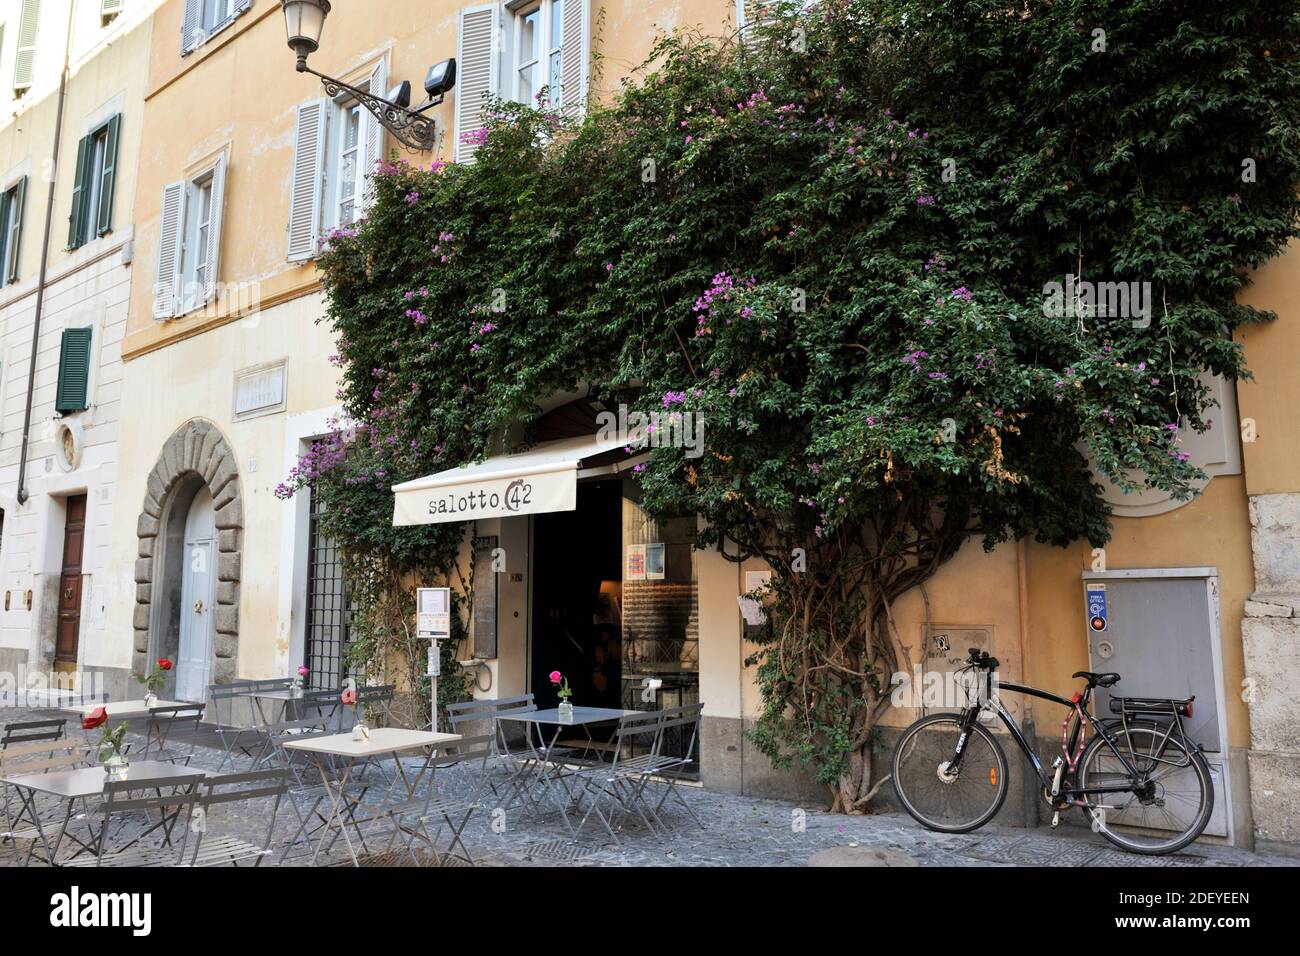 Italy, Rome, Piazza di Pietra, Salotto 42 cafe Stock Photo